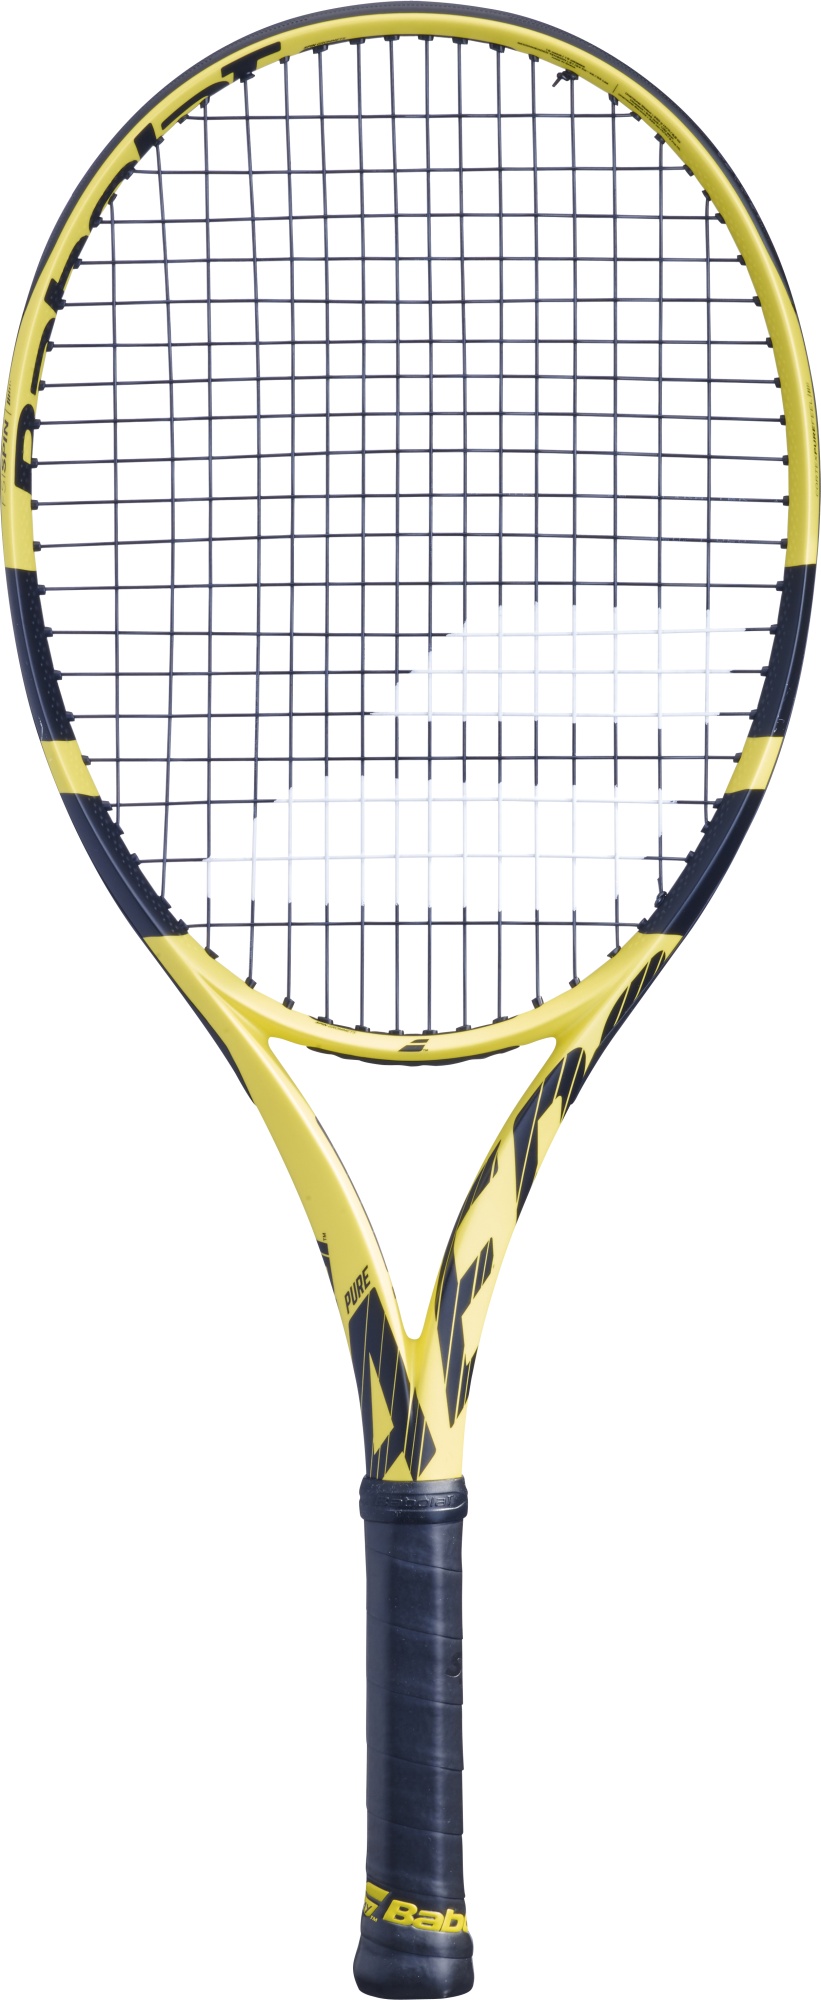 Children’s tennis racquet